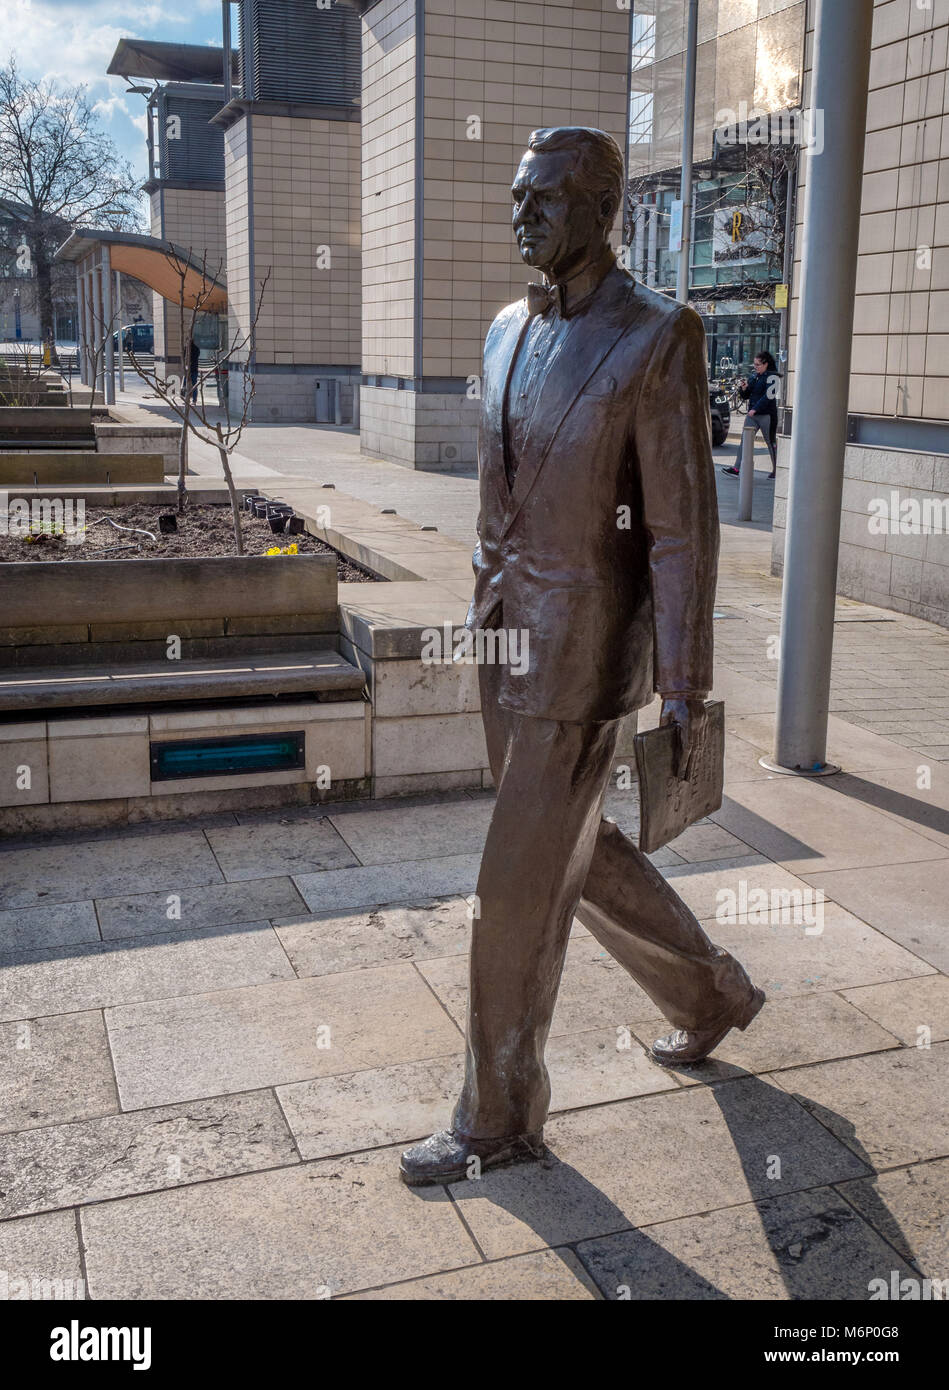 La scultura in bronzo di film di Hollywood attore e famoso Bristol lad Cary Grant in Millennium Square nel centro della città Foto Stock